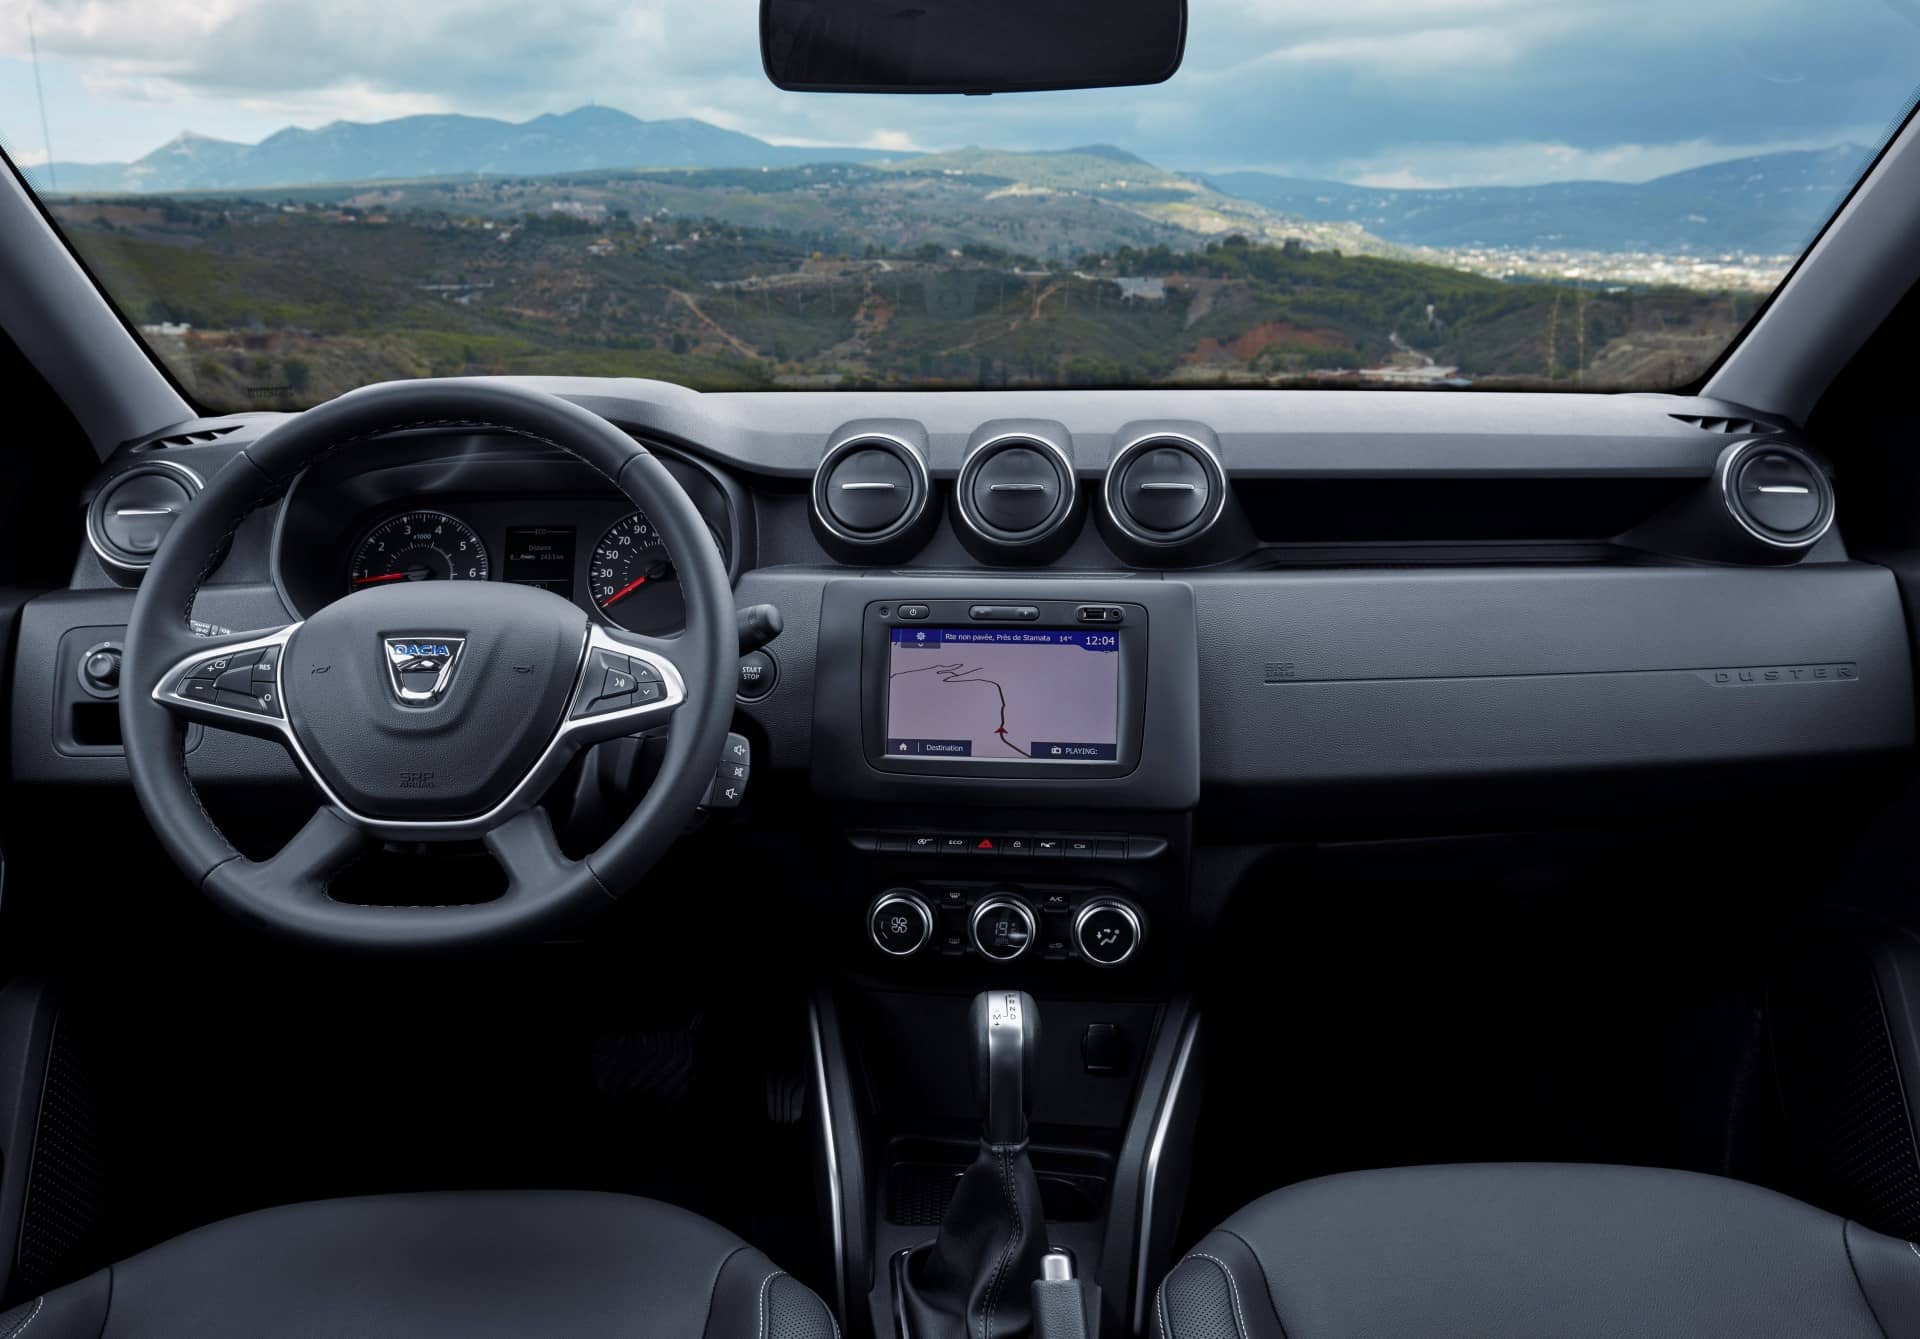 Dacia Duster 2018: Así es la lista de precios de uno de los todocaminos más económicos